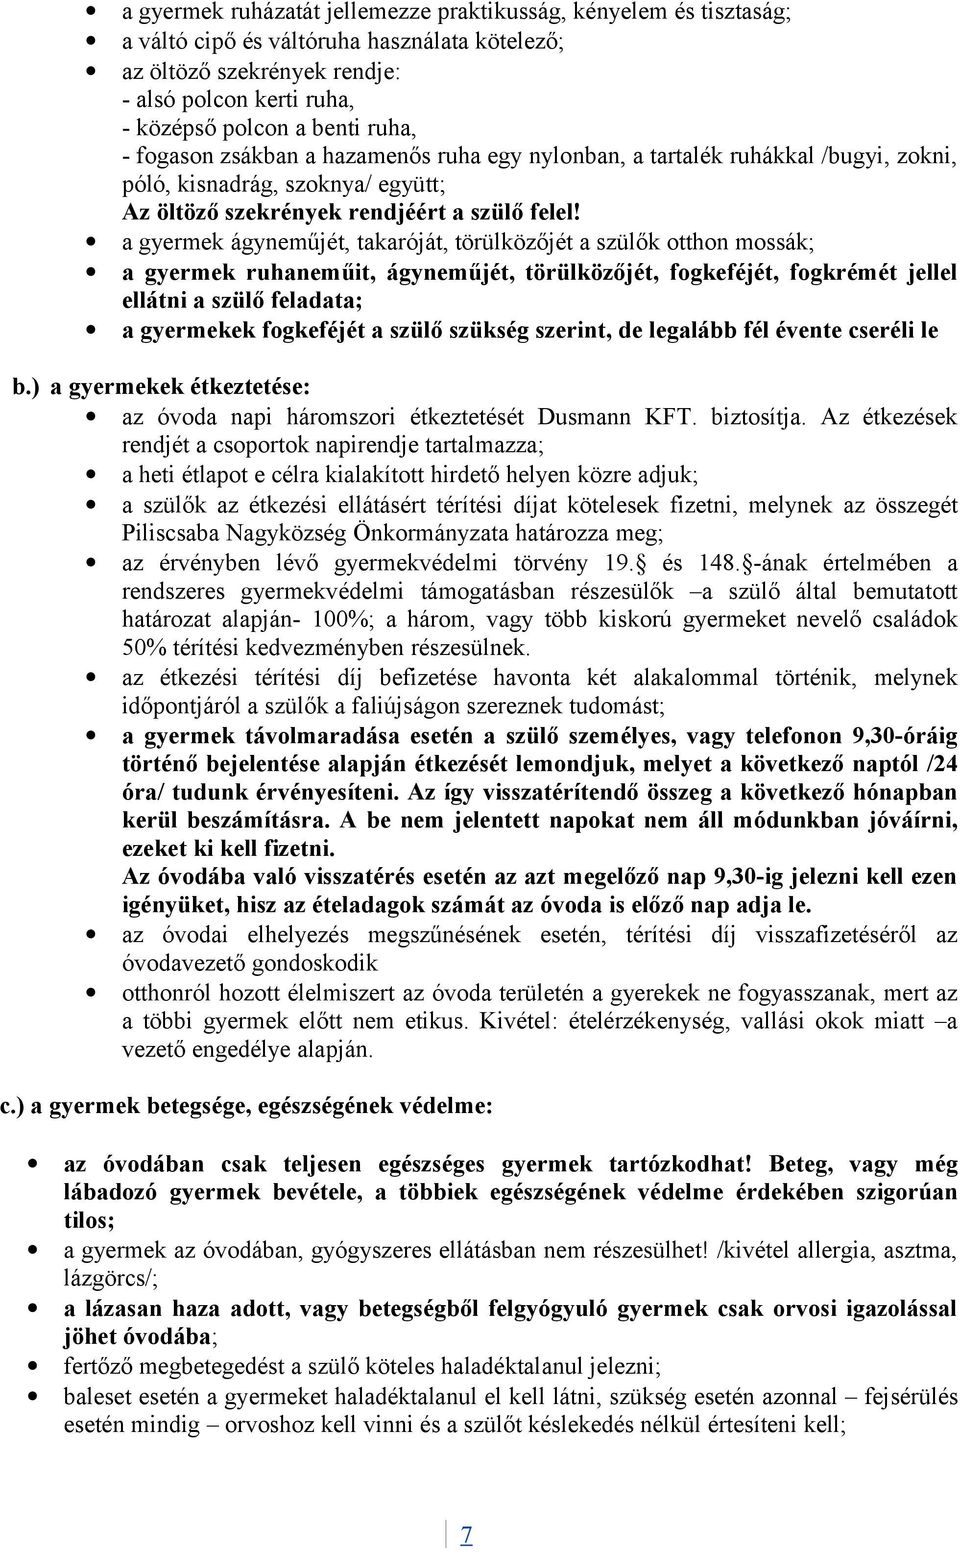 A Napsugár Óvoda és tagóvodáinak házirendje - PDF Ingyenes letöltés